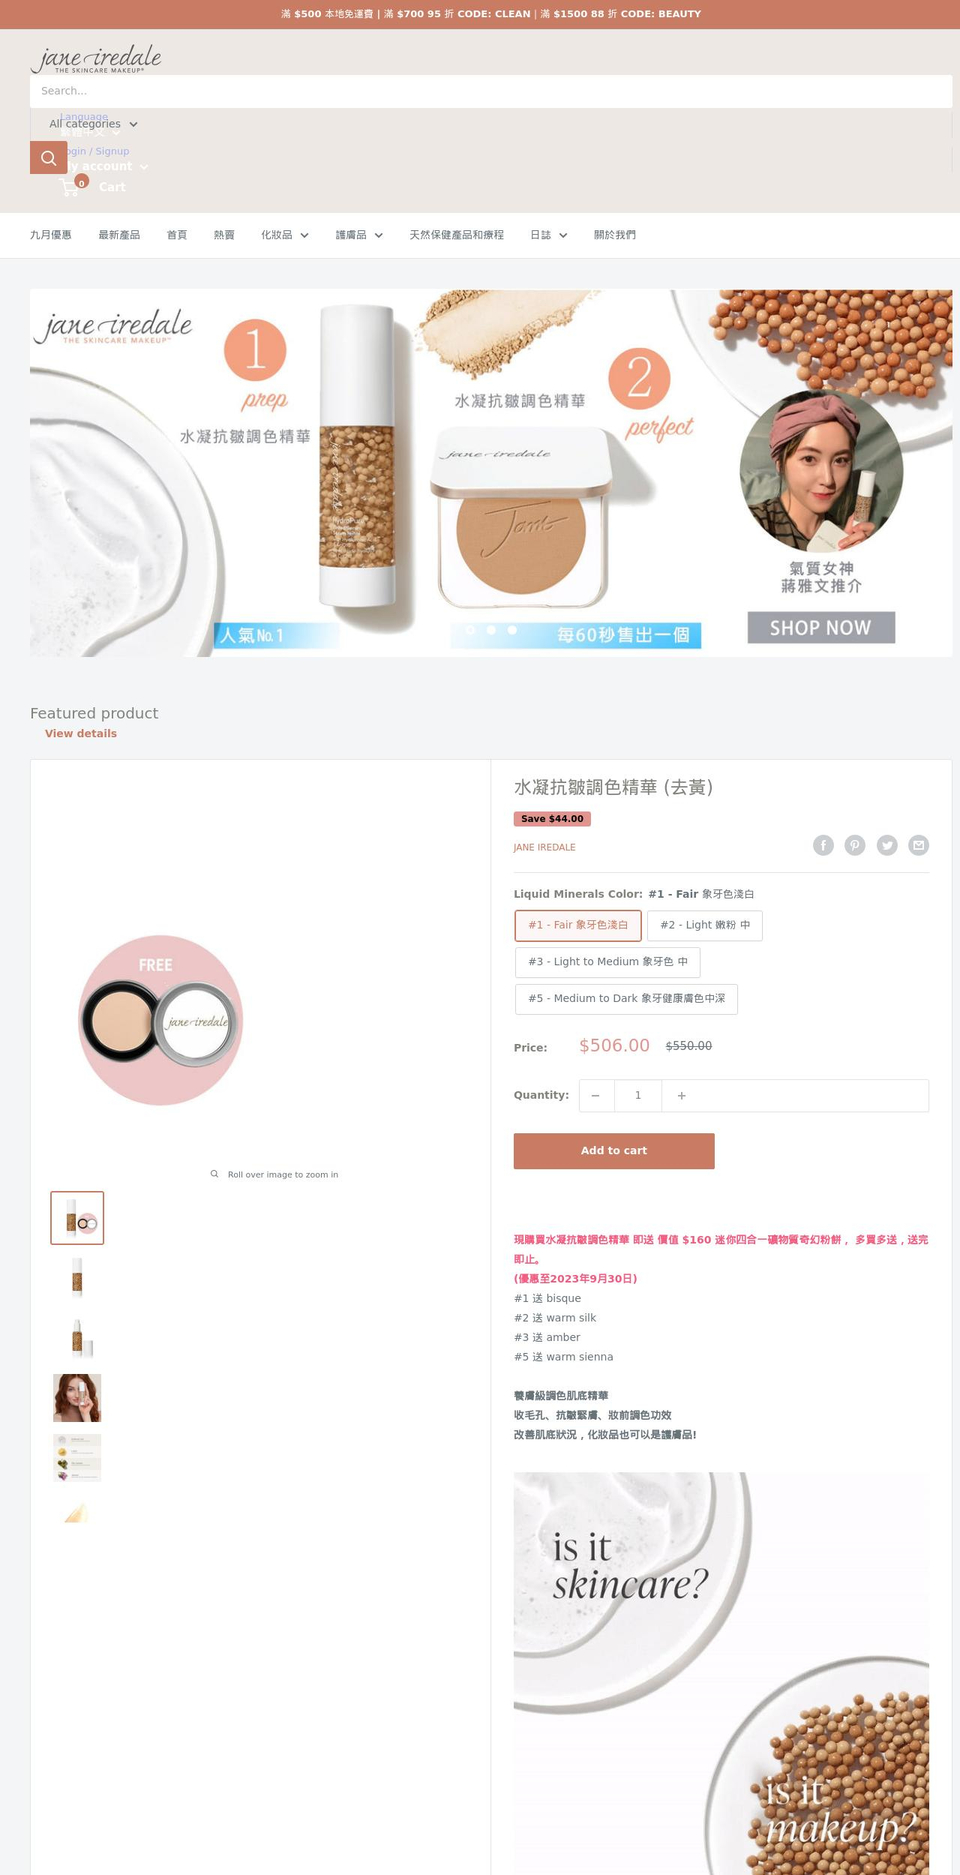 janeiredale.com.hk shopify website screenshot